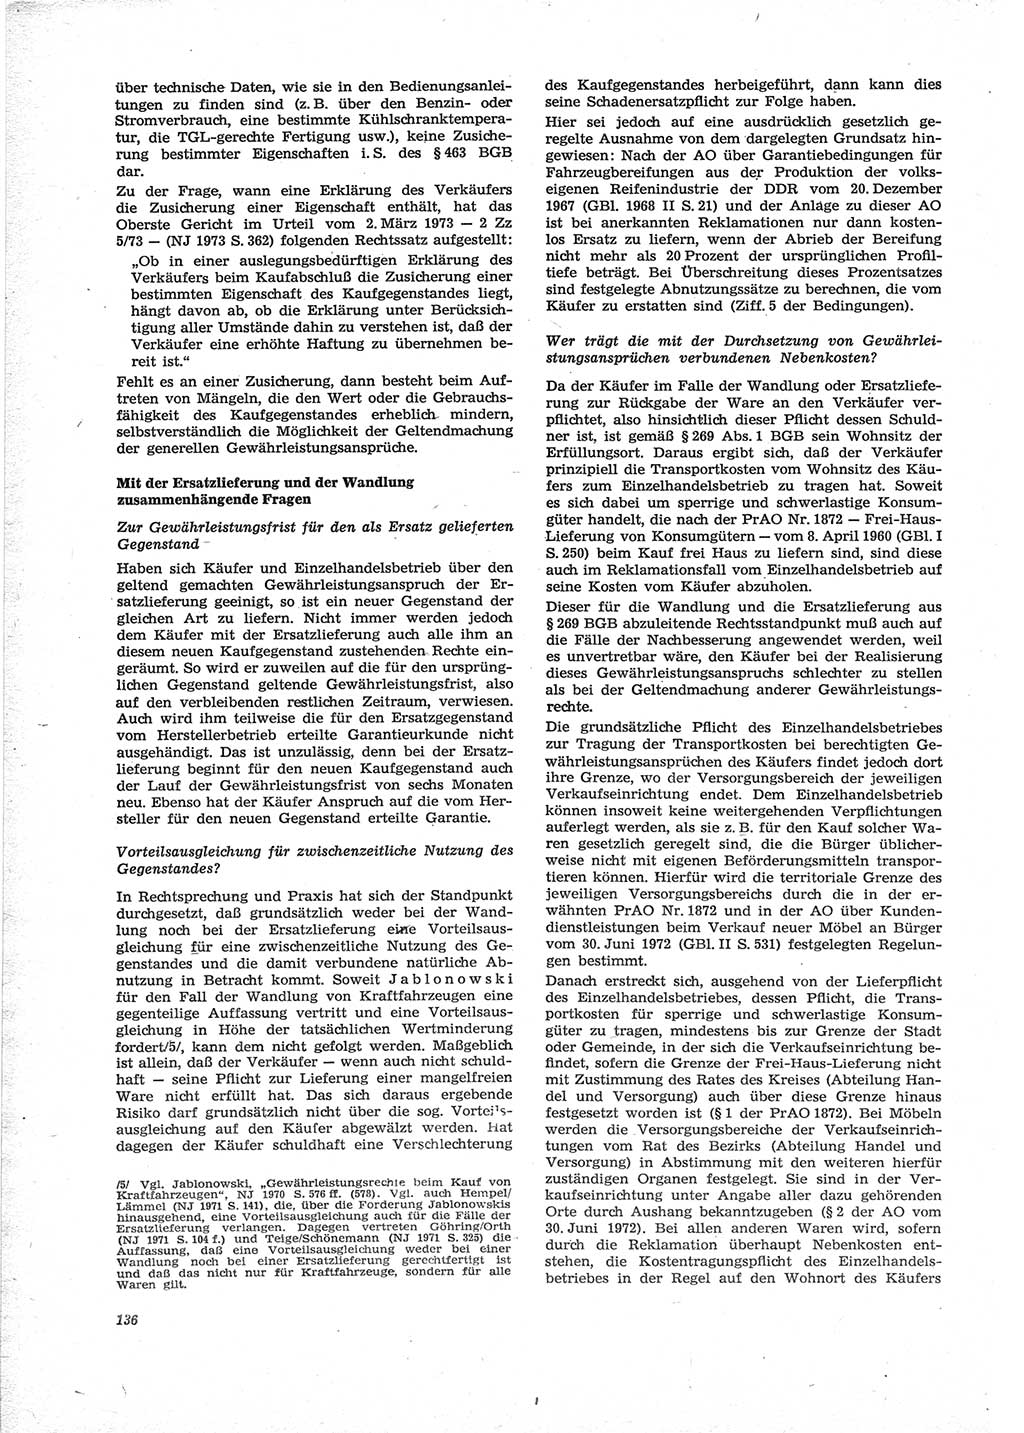 Neue Justiz (NJ), Zeitschrift für Recht und Rechtswissenschaft [Deutsche Demokratische Republik (DDR)], 28. Jahrgang 1974, Seite 136 (NJ DDR 1974, S. 136)